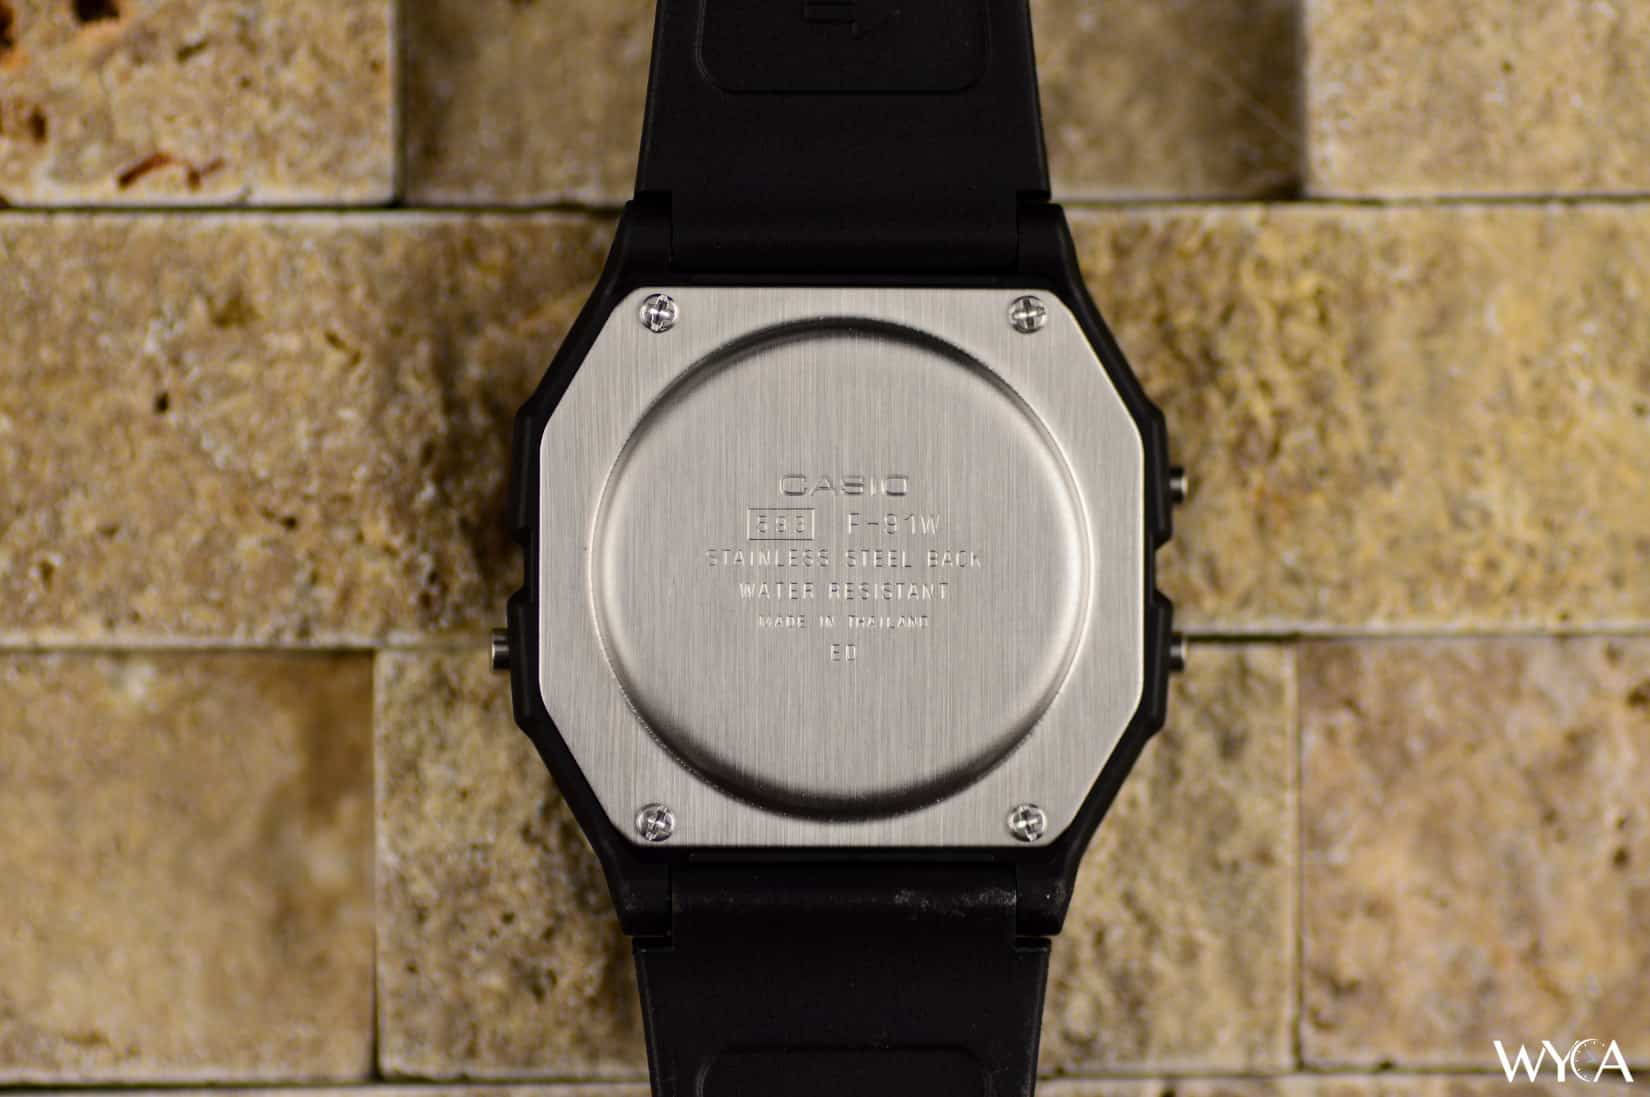 Casio F-91 Digital Watch Caseback